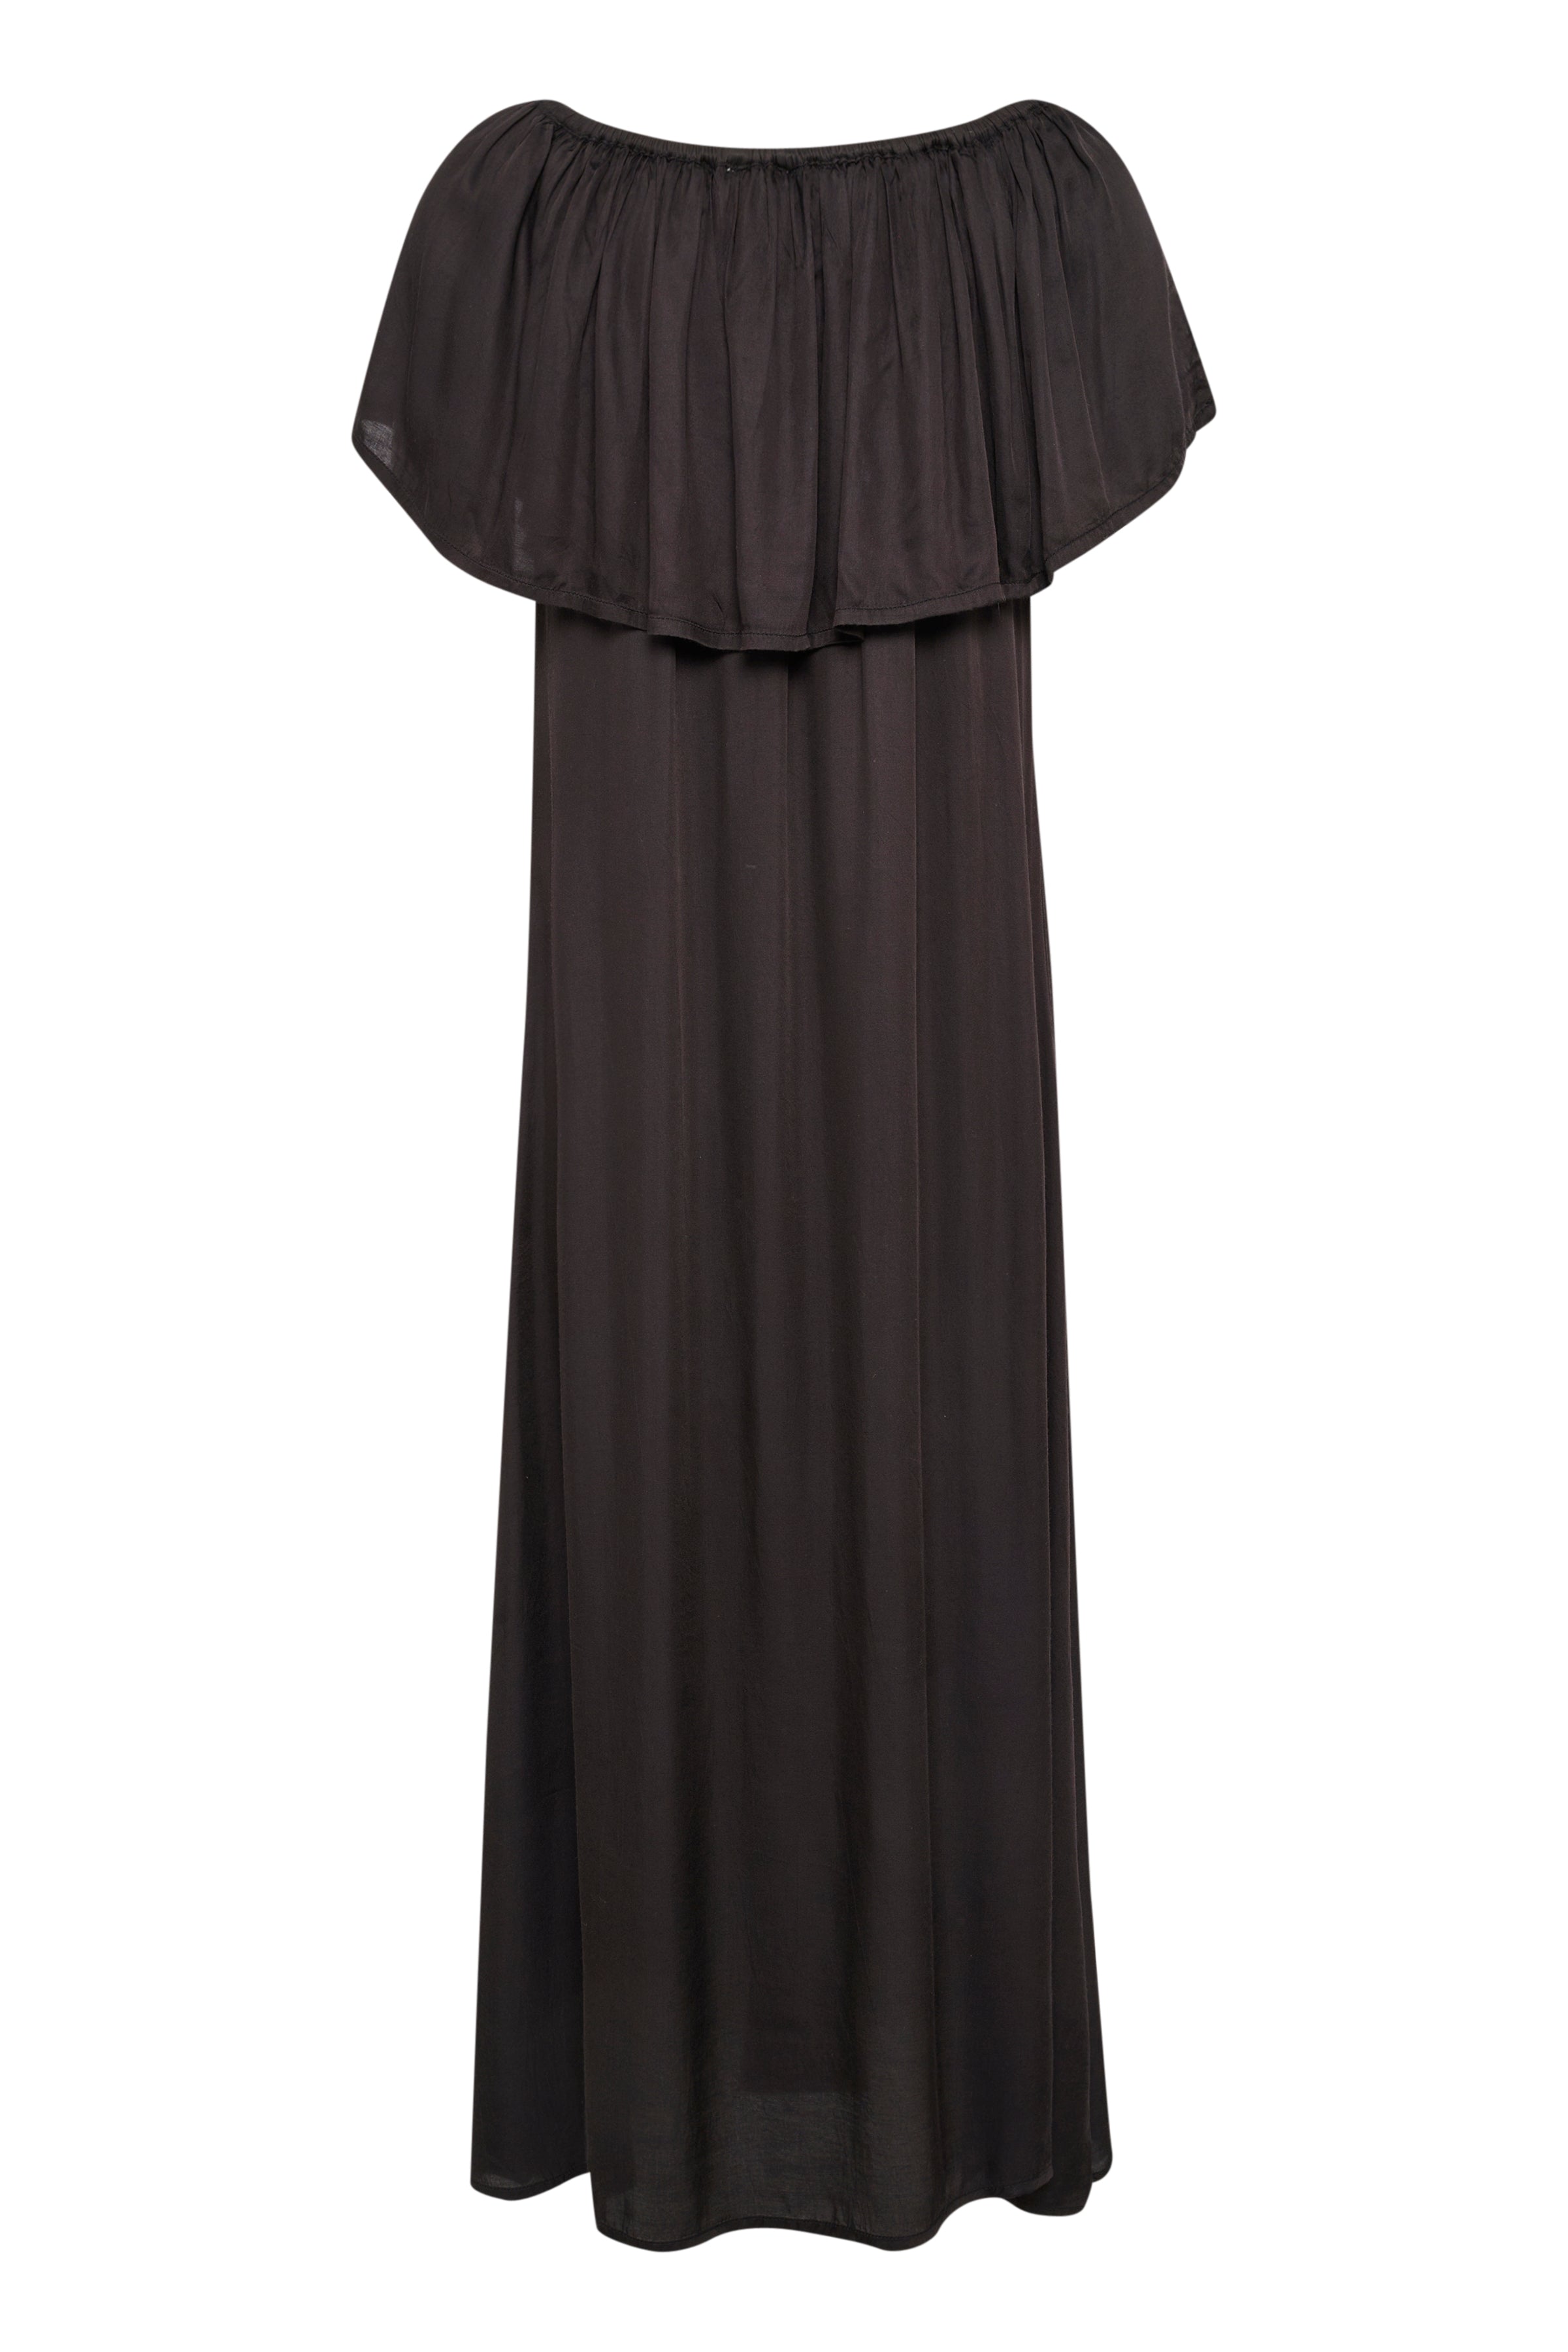 My Essential Wardobe MelissaMW Florence Dress